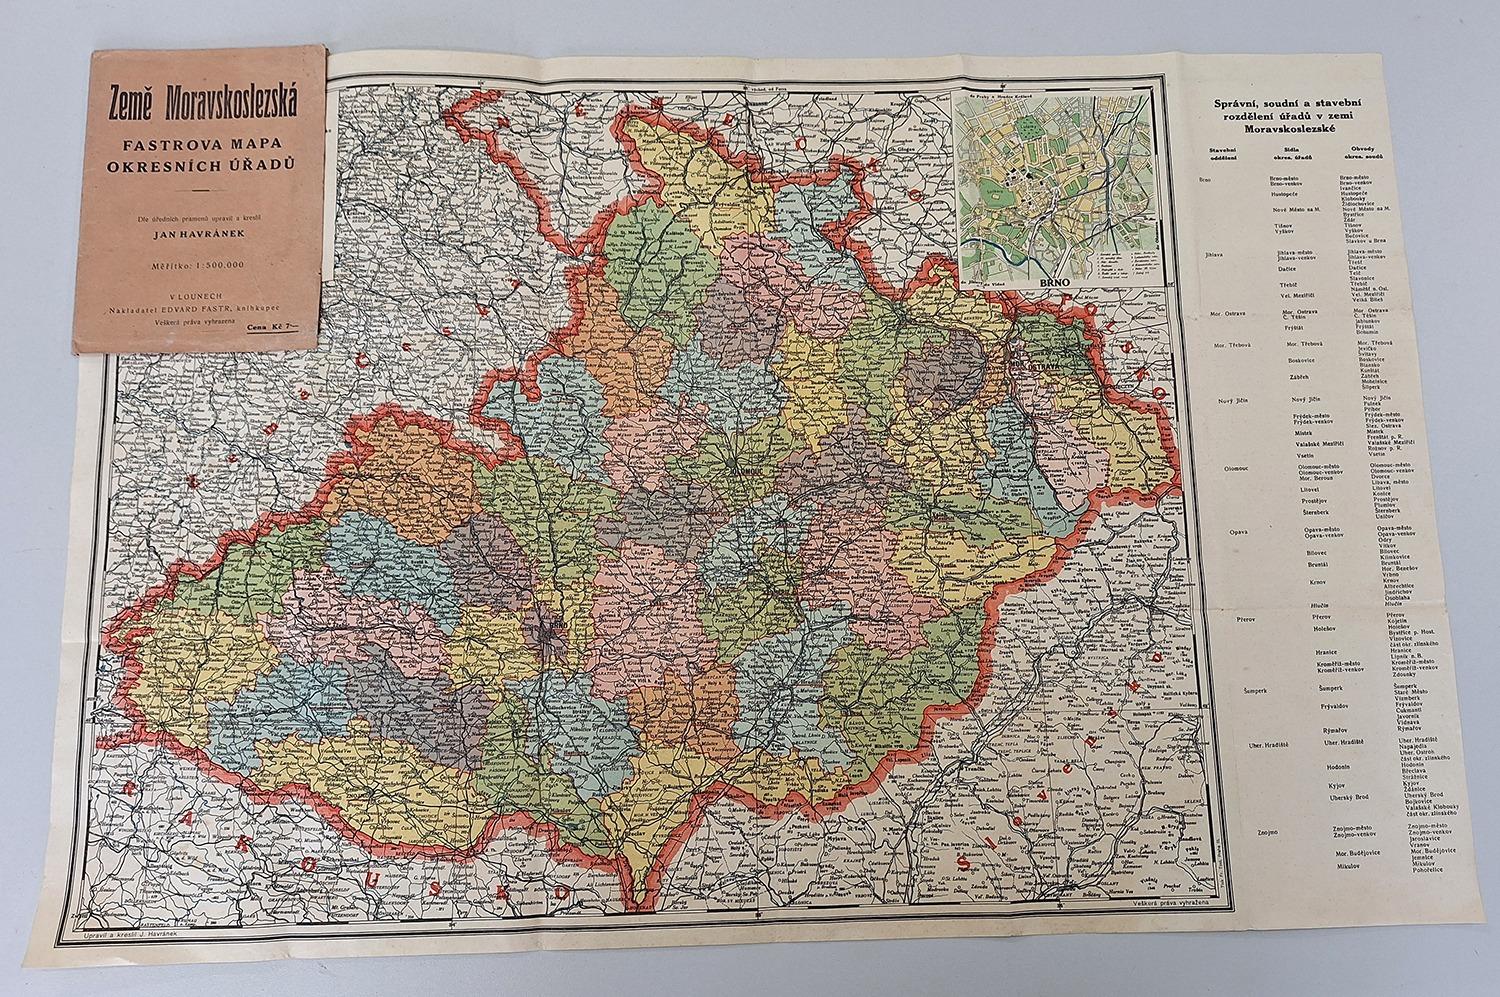 Fastrova mapa okresmích úradov - krajina Moravskosliezska - Staré mapy a veduty